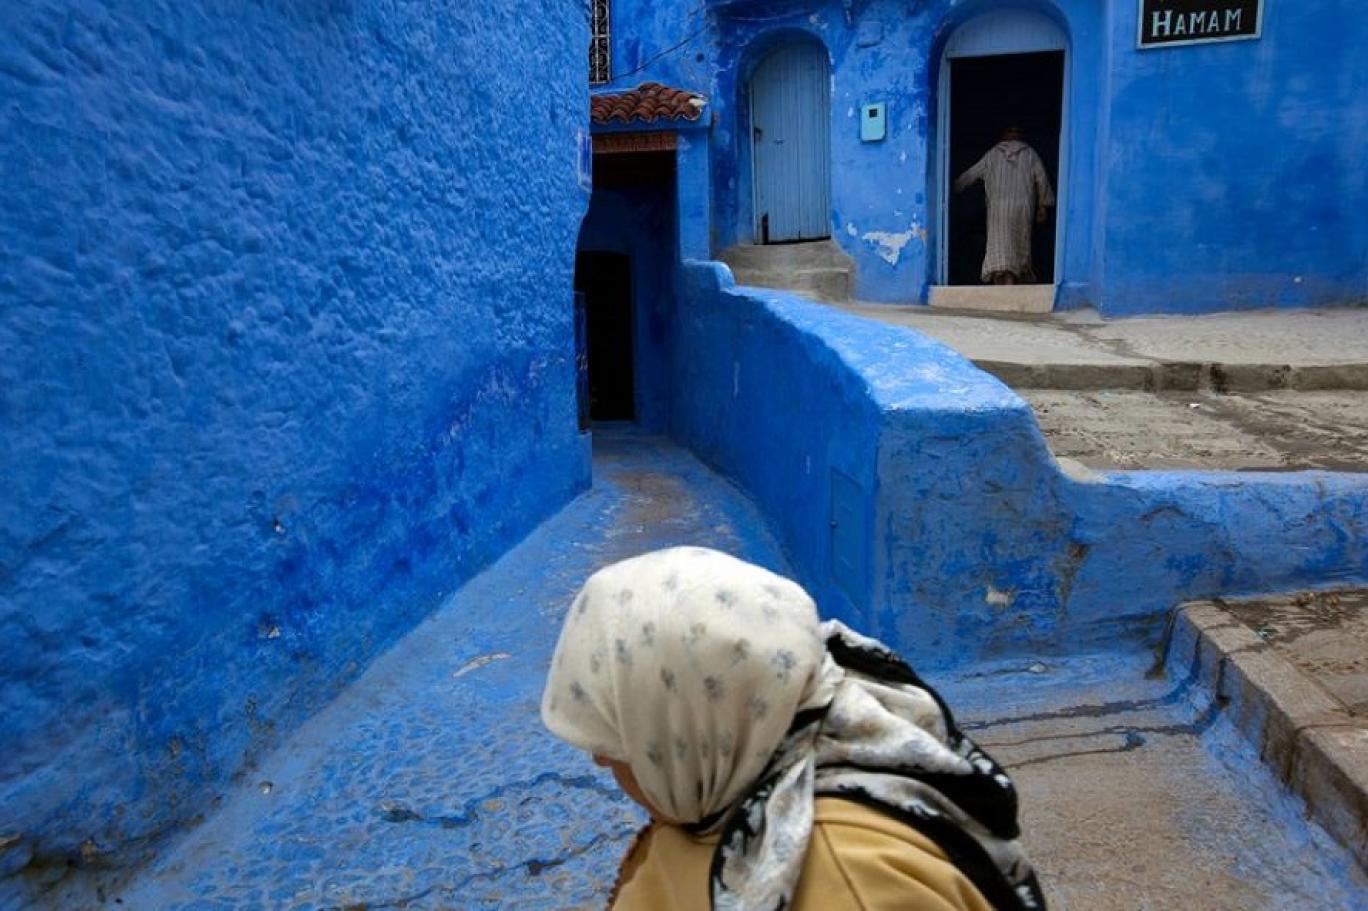 اختراع الاتصال تدريجيا  الحمّام الشعبي المغربي مكان ضروري له طقوسه الخاصة | اندبندنت عربية